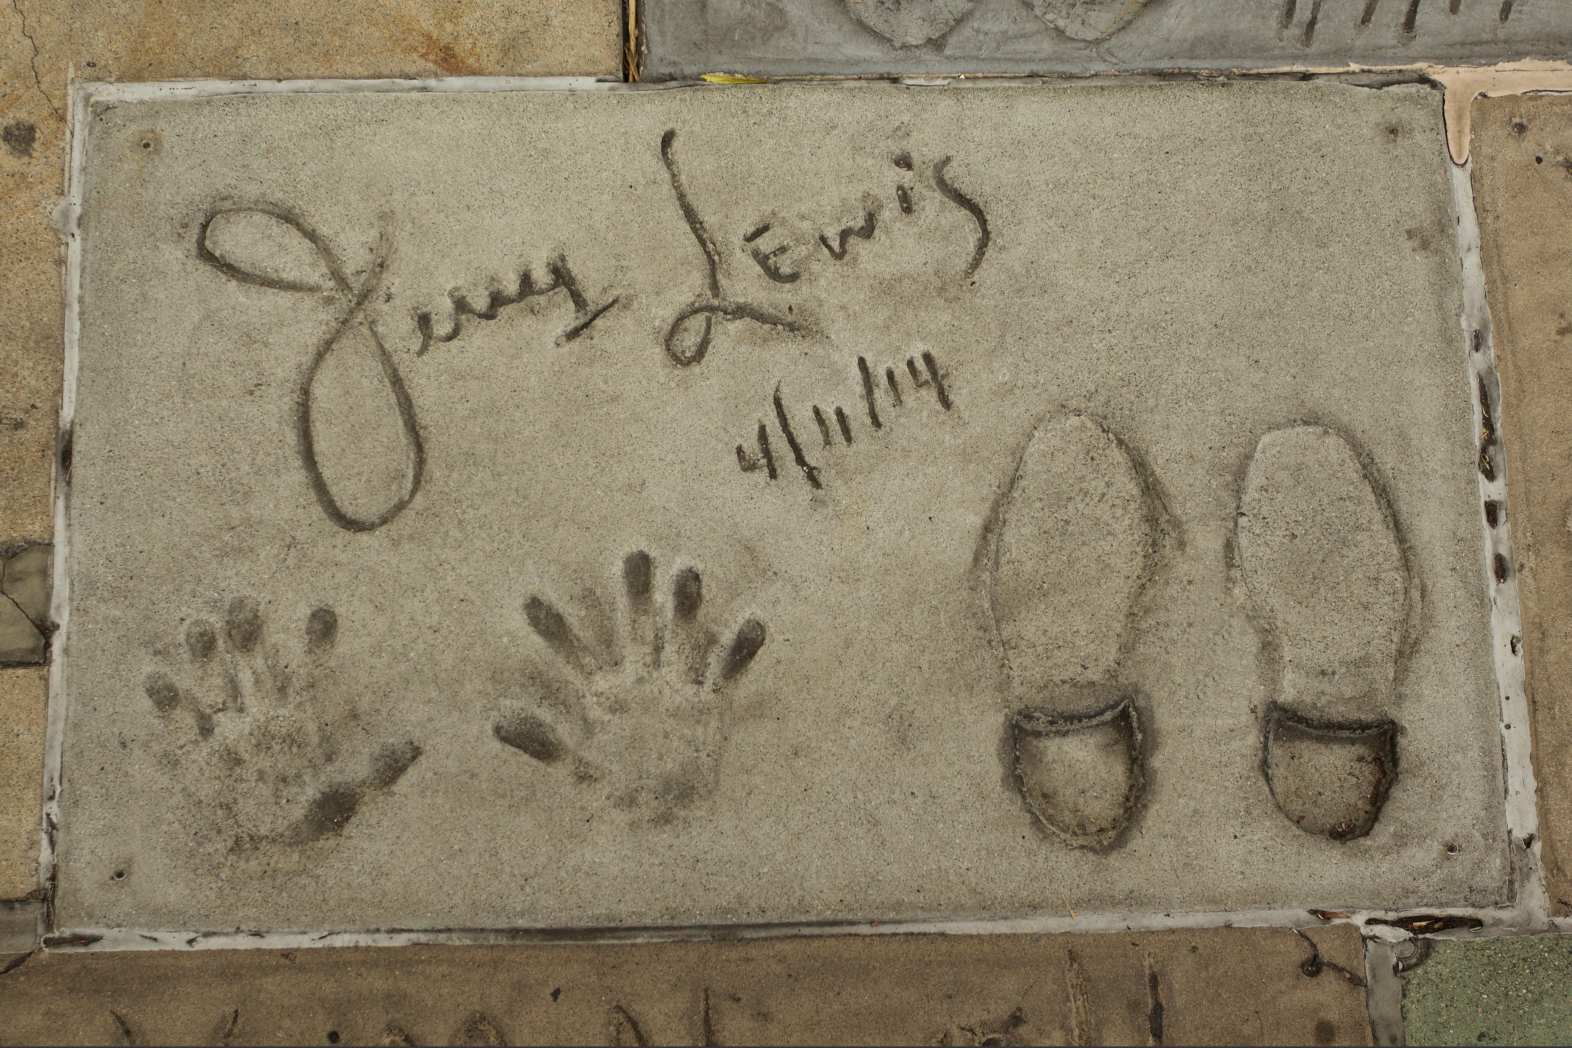 Pokojnemu komiku, igralcu in legendarnemu zabavljaču Jerryju Lewisu so na hollywoodskem Pločniku slavnih v Los Angelesu, ko je leta 2017 umrl, okoli njegovih odtisov rok in stopal postavili začasni spomenik.